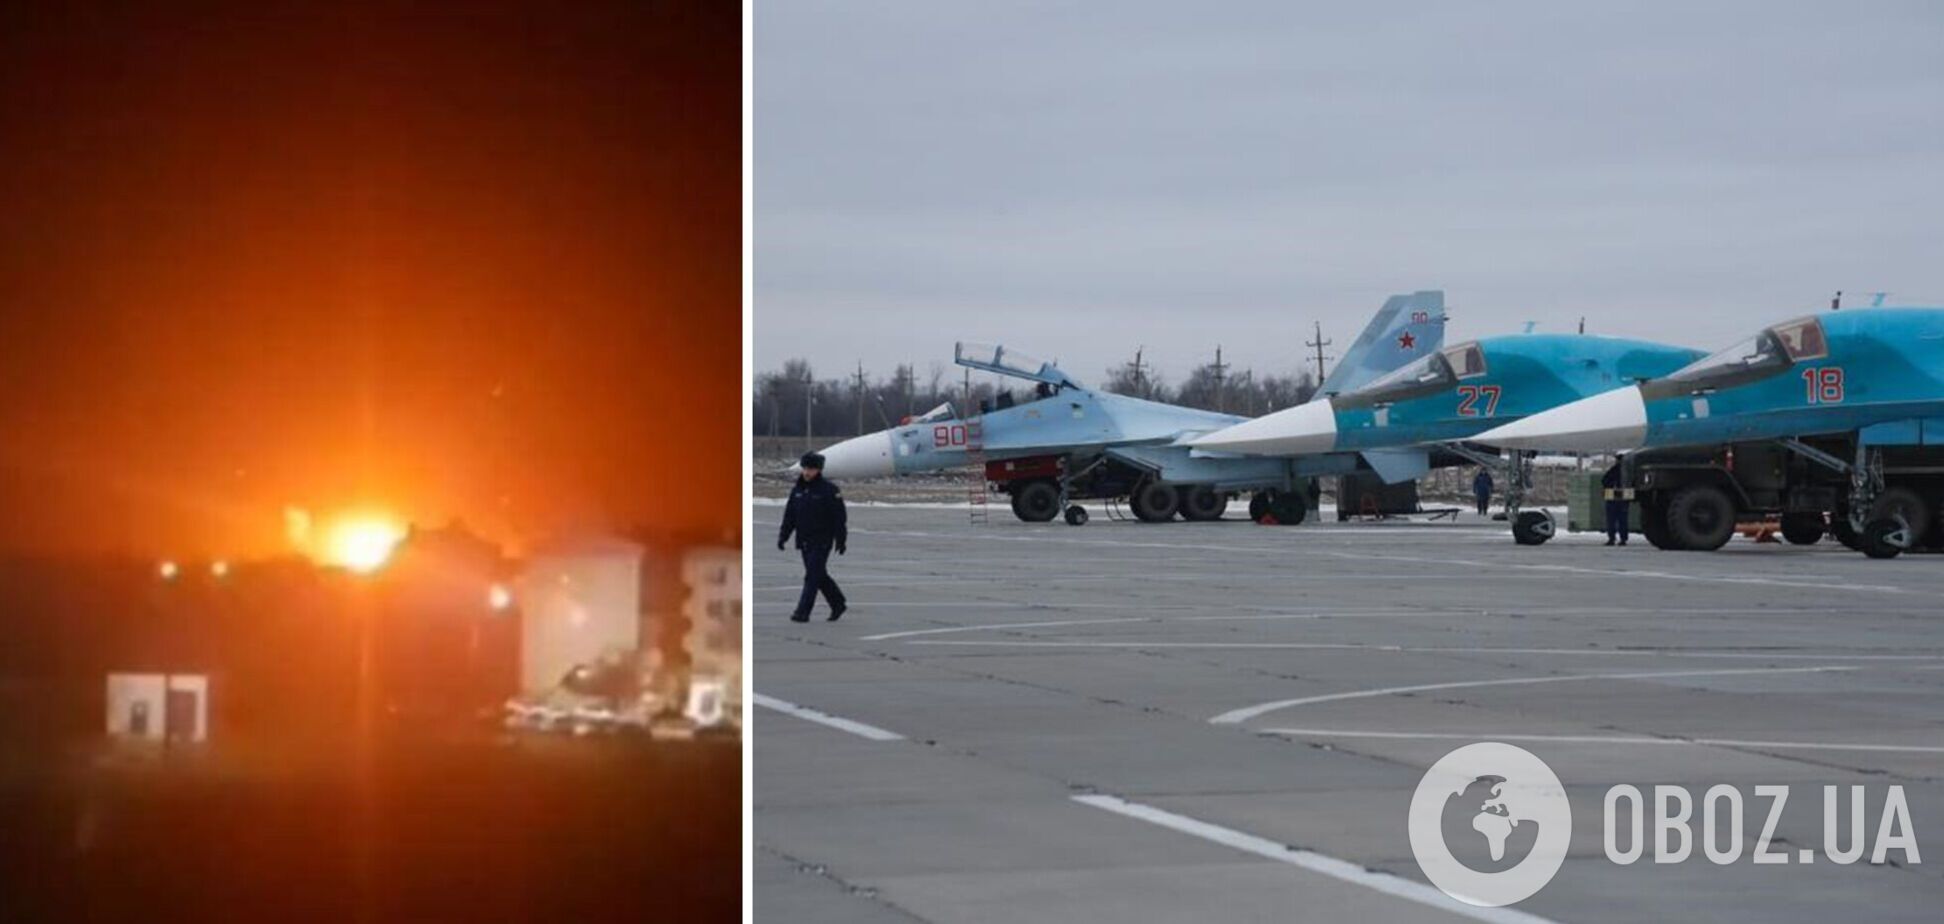 На аэродроме в Морозовске, где ночью прогремели взрывы, могло находиться около 30 самолетов РФ: что известно